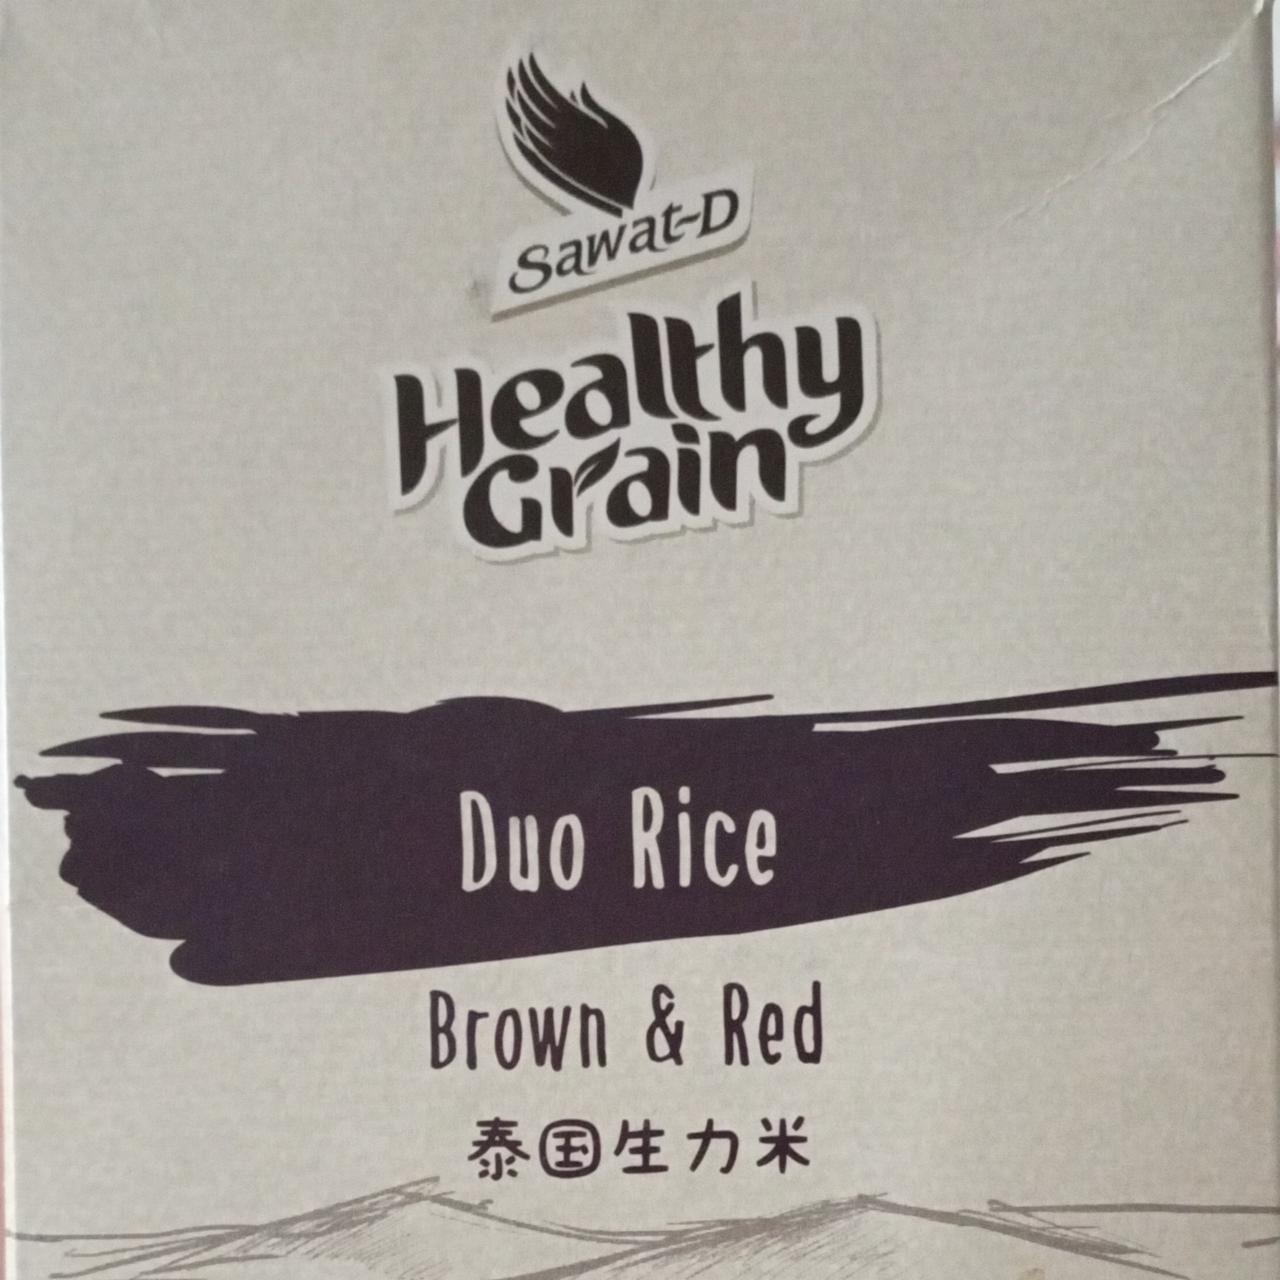 Fotografie - Healthy Grain Duo Rice Brown & Red Sawat-D